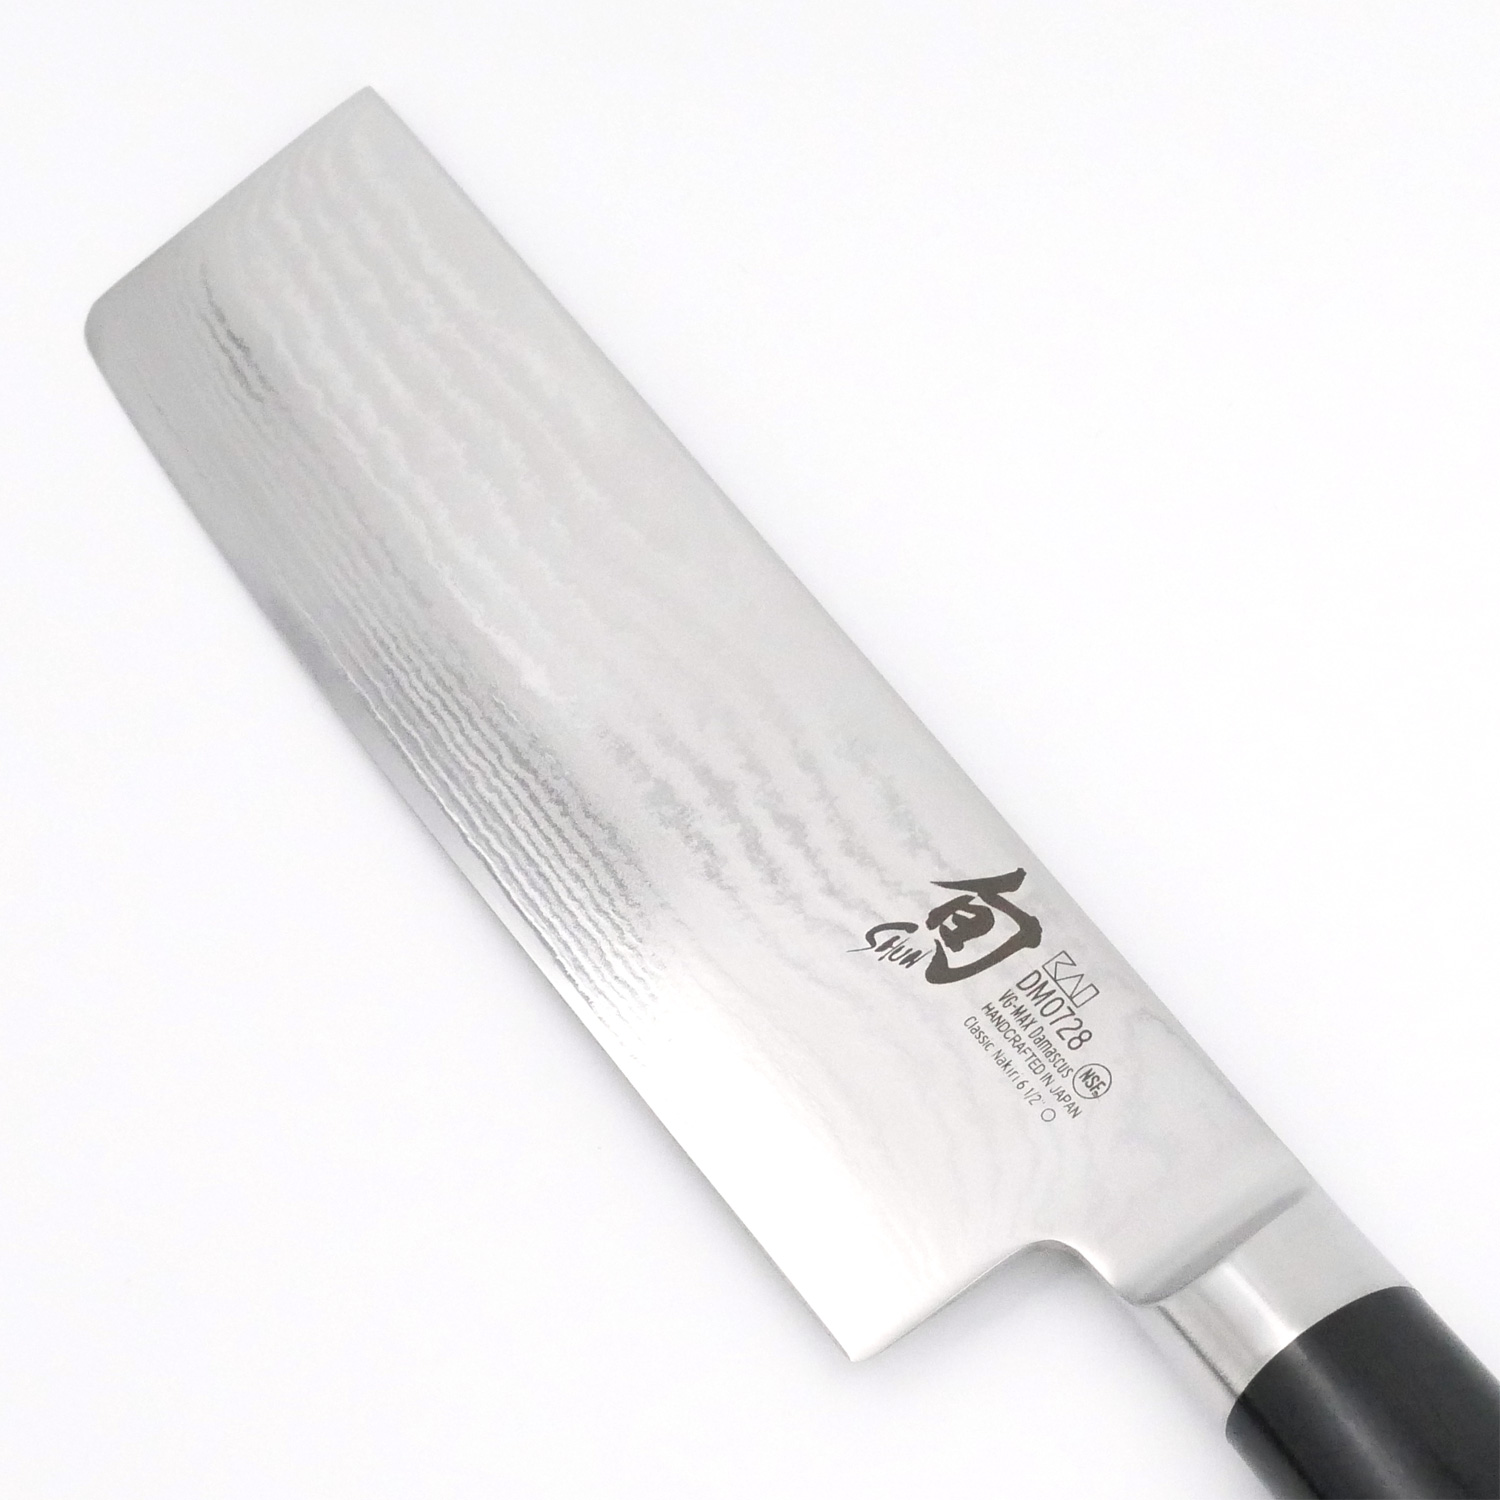 https://kyotoboutique.fr/6034/cuchillo-de-cocina-japones-para-cortar-frutas-y-verduras-nakiri-shun-classic-damascus-165-cm.jpg